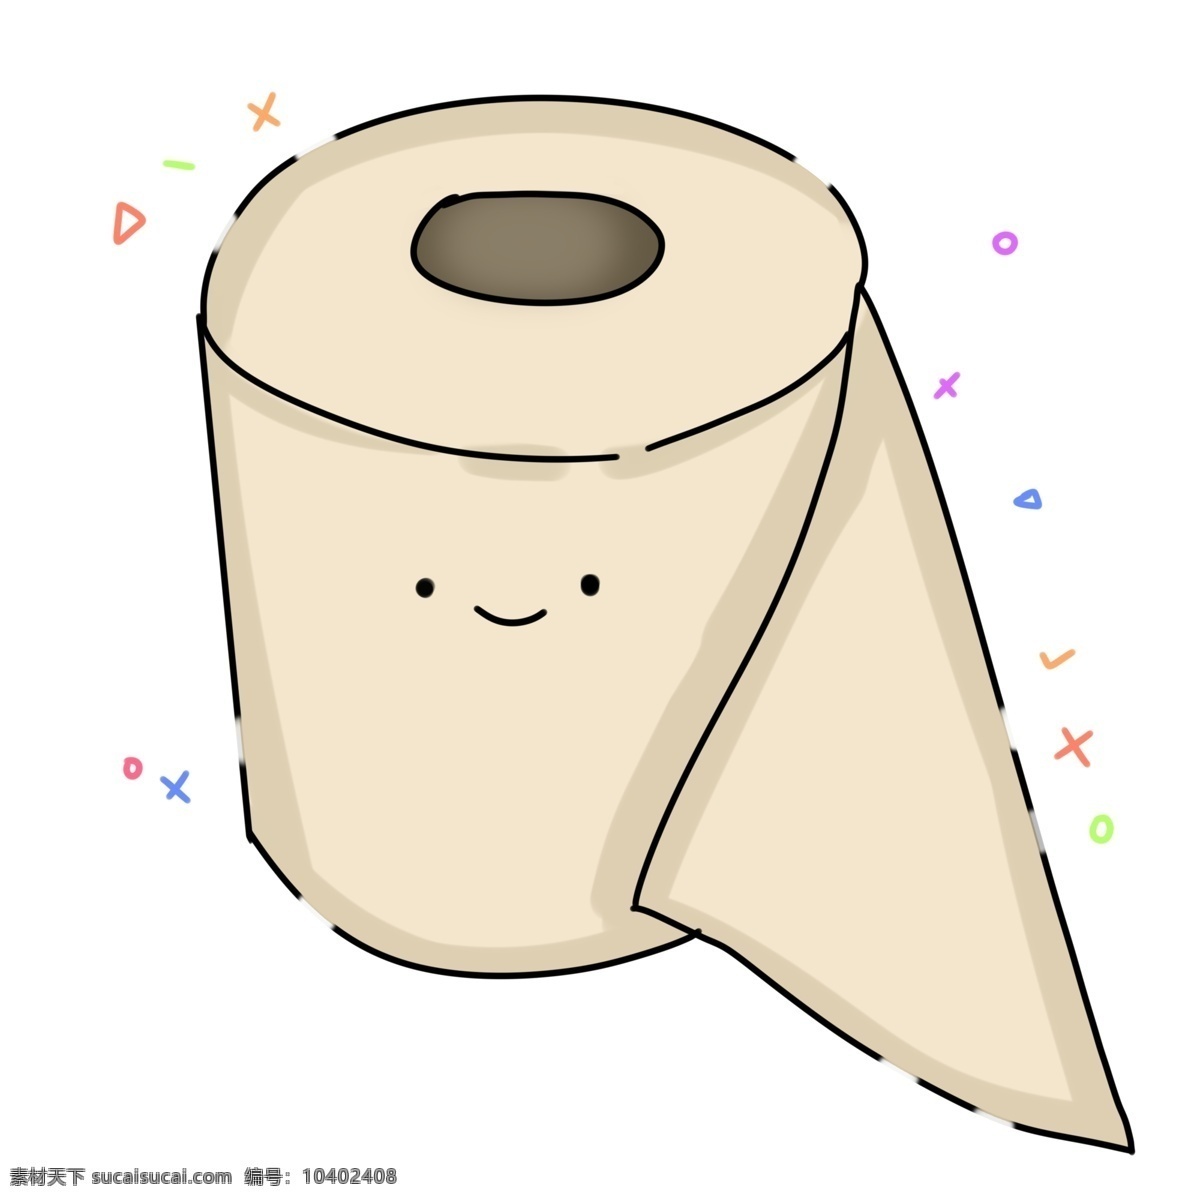 mbe 卫生 卷 纸 mbe卫生纸 卷纸 厕所